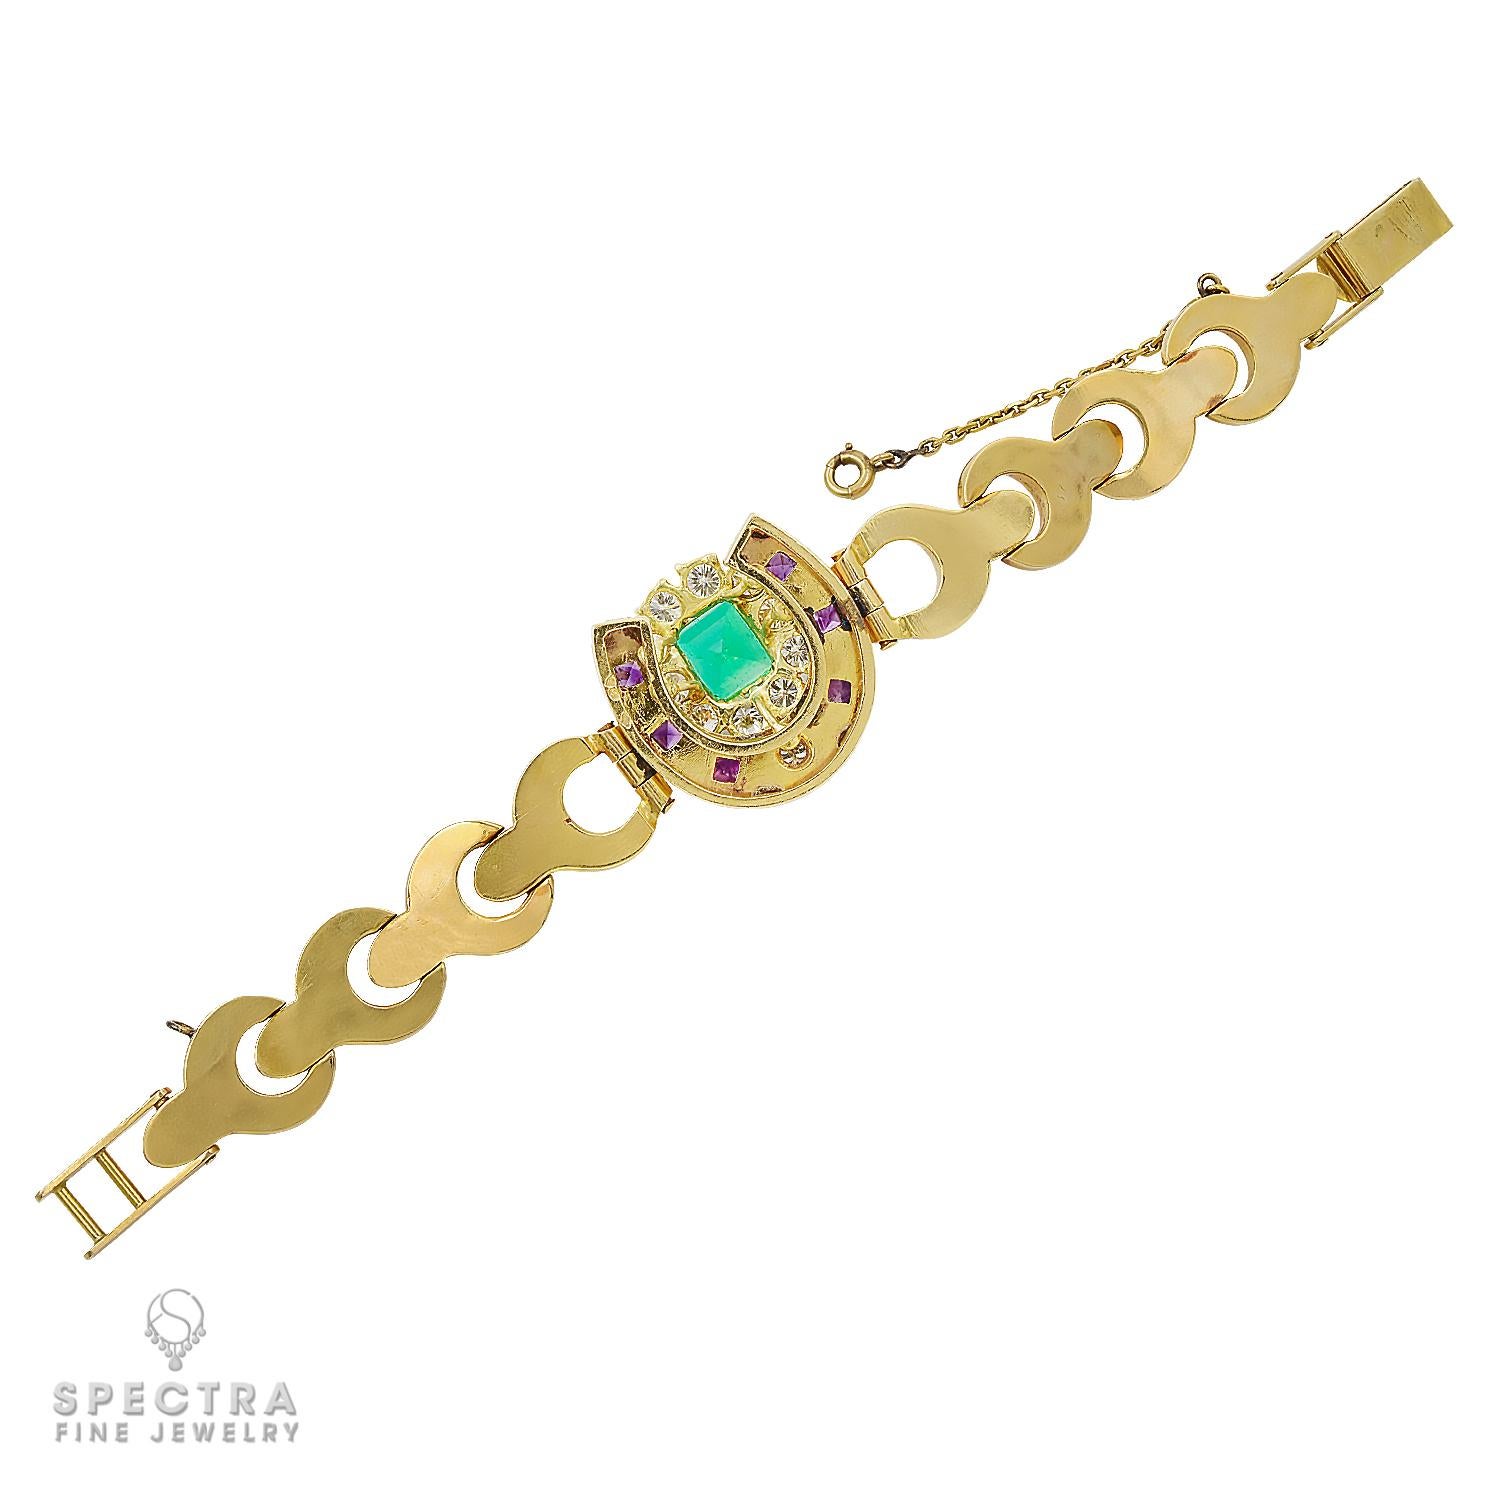 Dieses atemberaubende französische Vintage-Armband, das etwa in den 1980er Jahren hergestellt wurde, ist die perfekte Mischung aus zeitloser Eleganz und exquisitem Design. Der aus 18-karätigem Gelbgold gefertigte Schmuck besteht aus einem fesselnden